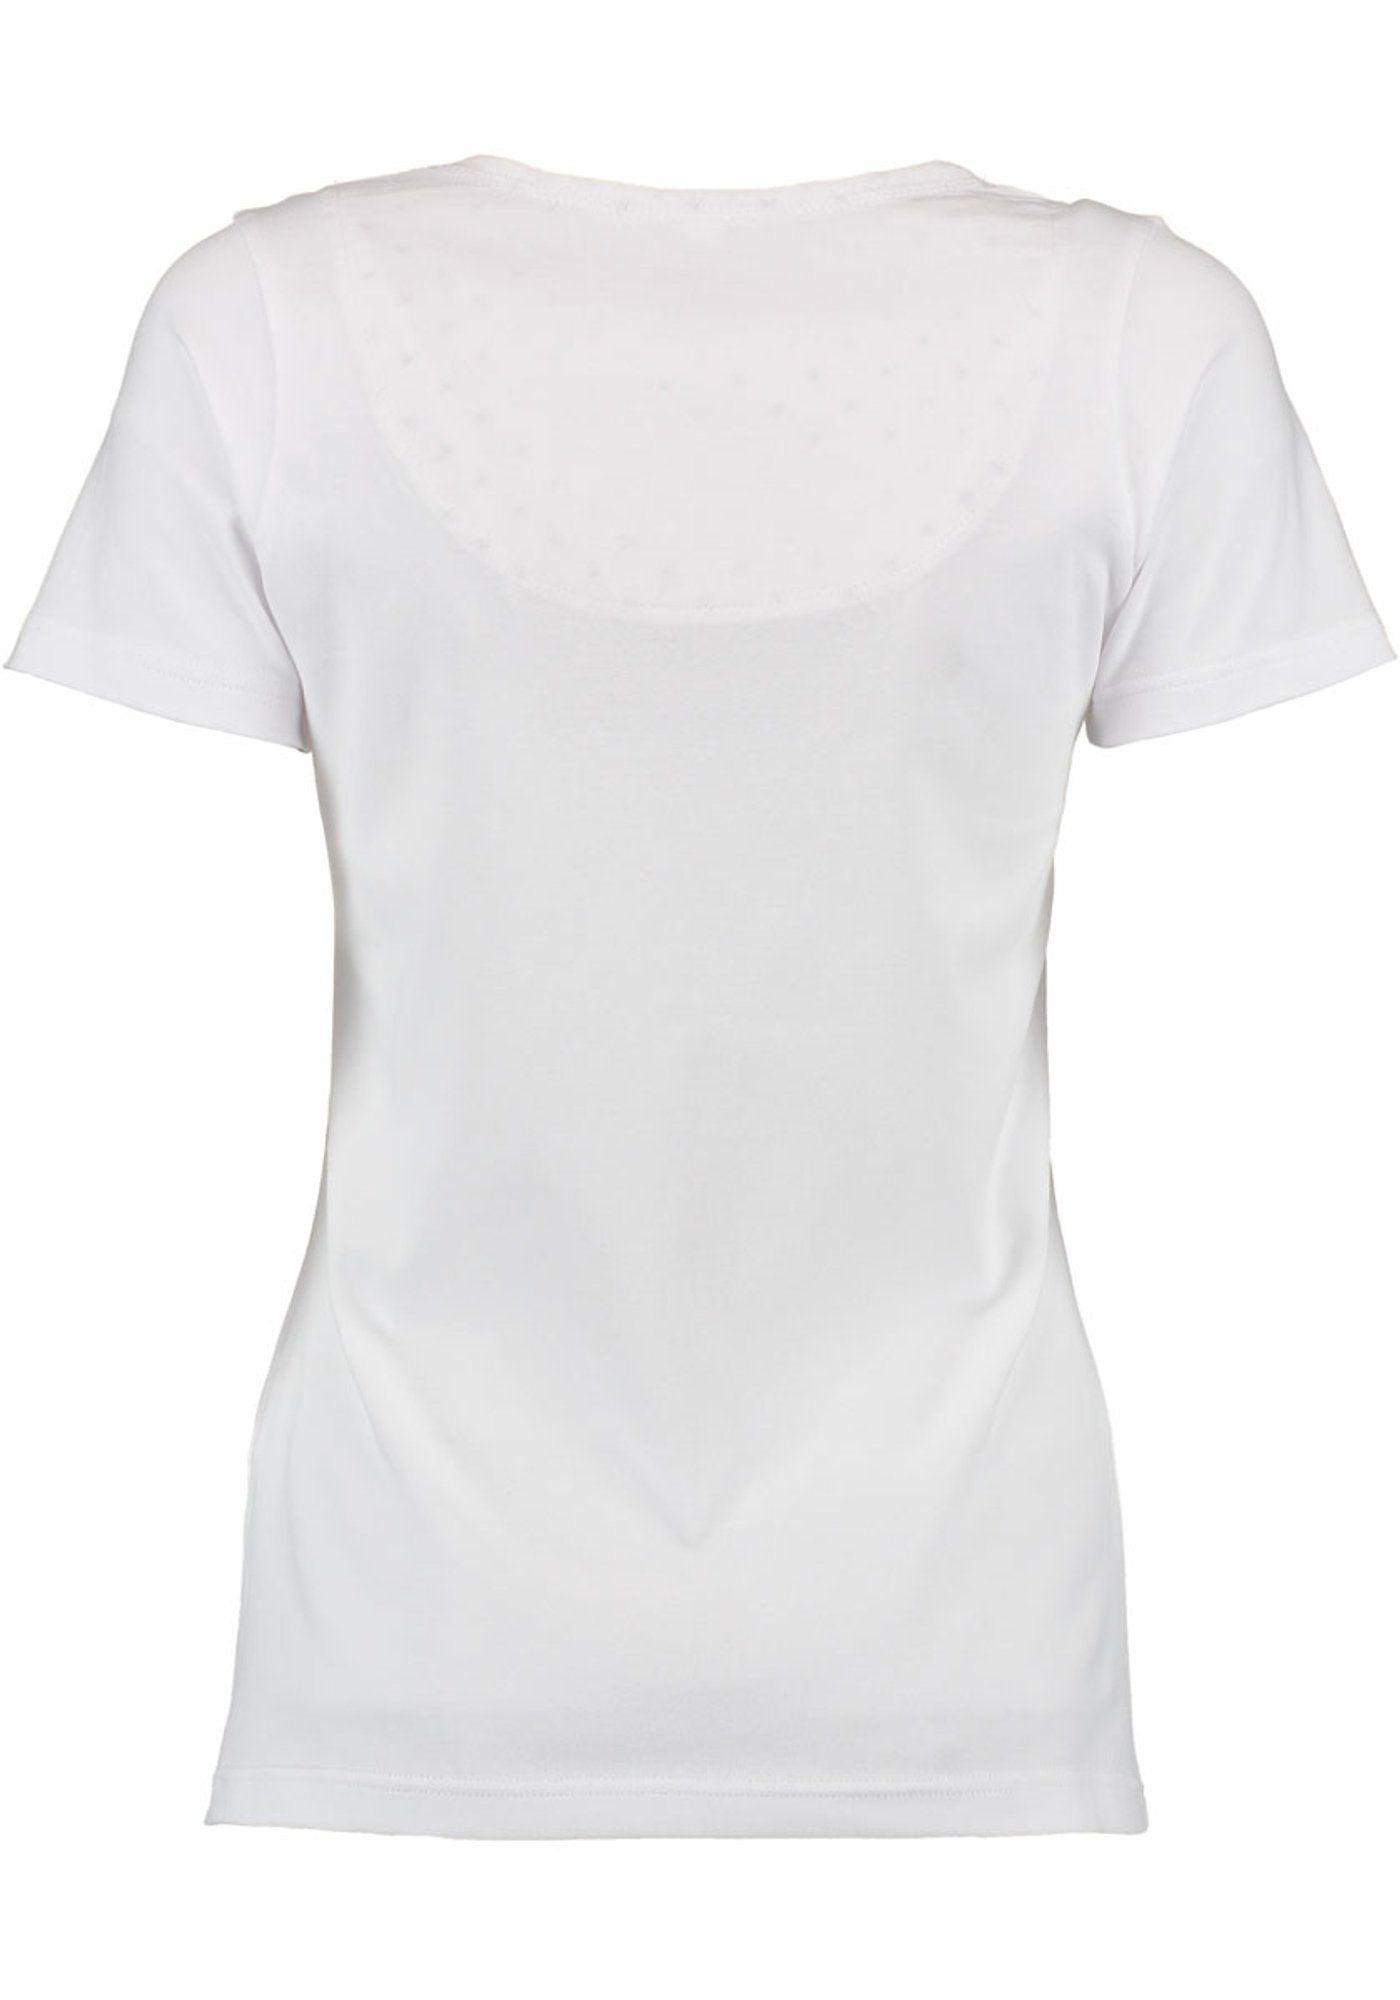 Uginoy weiß OS-Trachten Kurzarm Brust mit der Trachtenshirt T-Shirt Strass-Hirsch auf